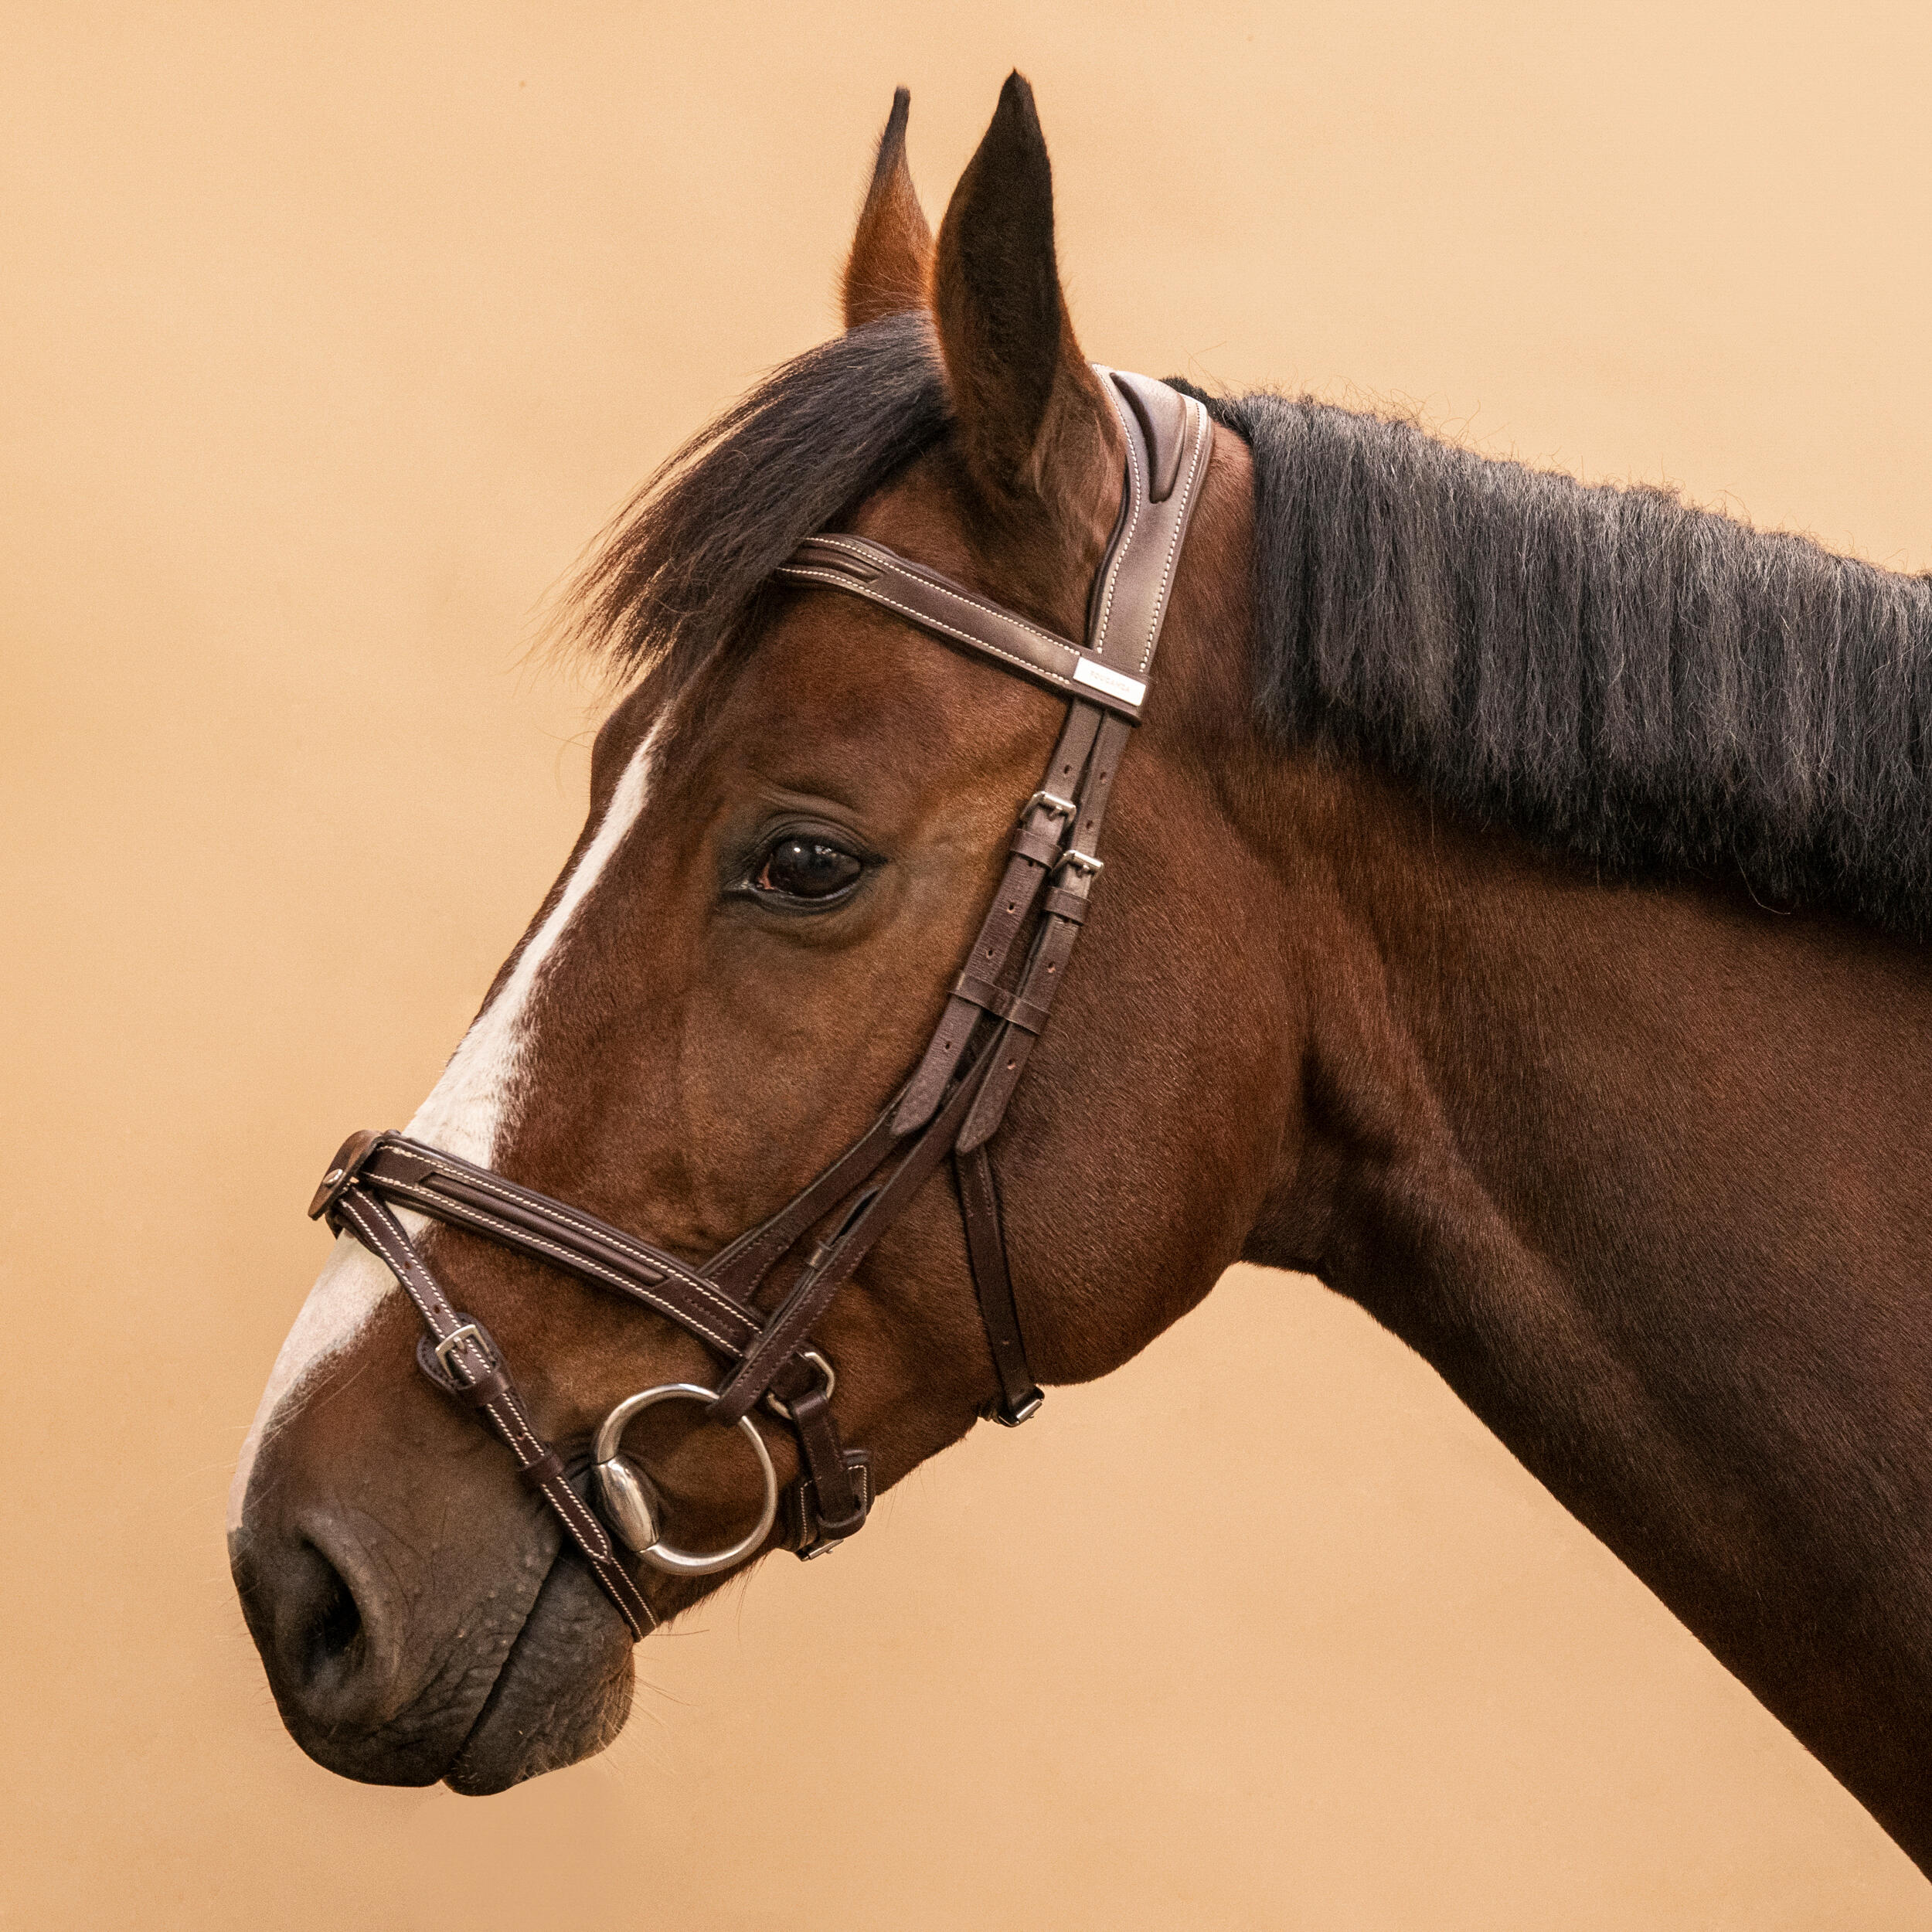 FOUGANZA Decathlon - Testiera equitazione cavallo e pony 900 cuoio capezzina francese marrone -